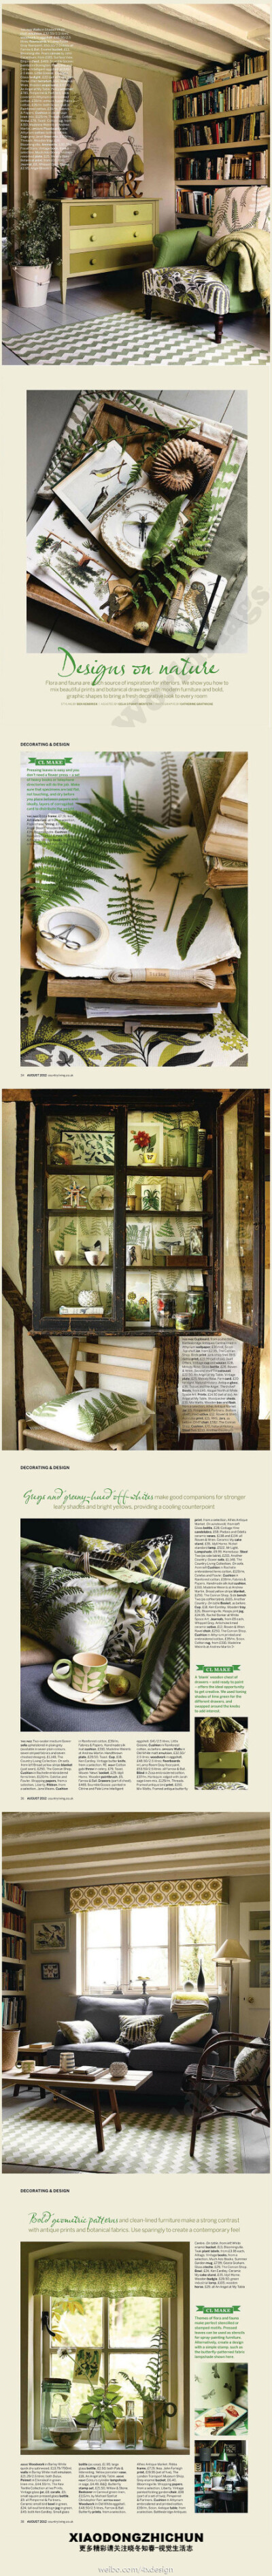 家居时尚-----很森的绿色，蕨类图案随心印。真心喜欢蕨类植物。更多精彩请关注@晓冬知春-视觉生活志